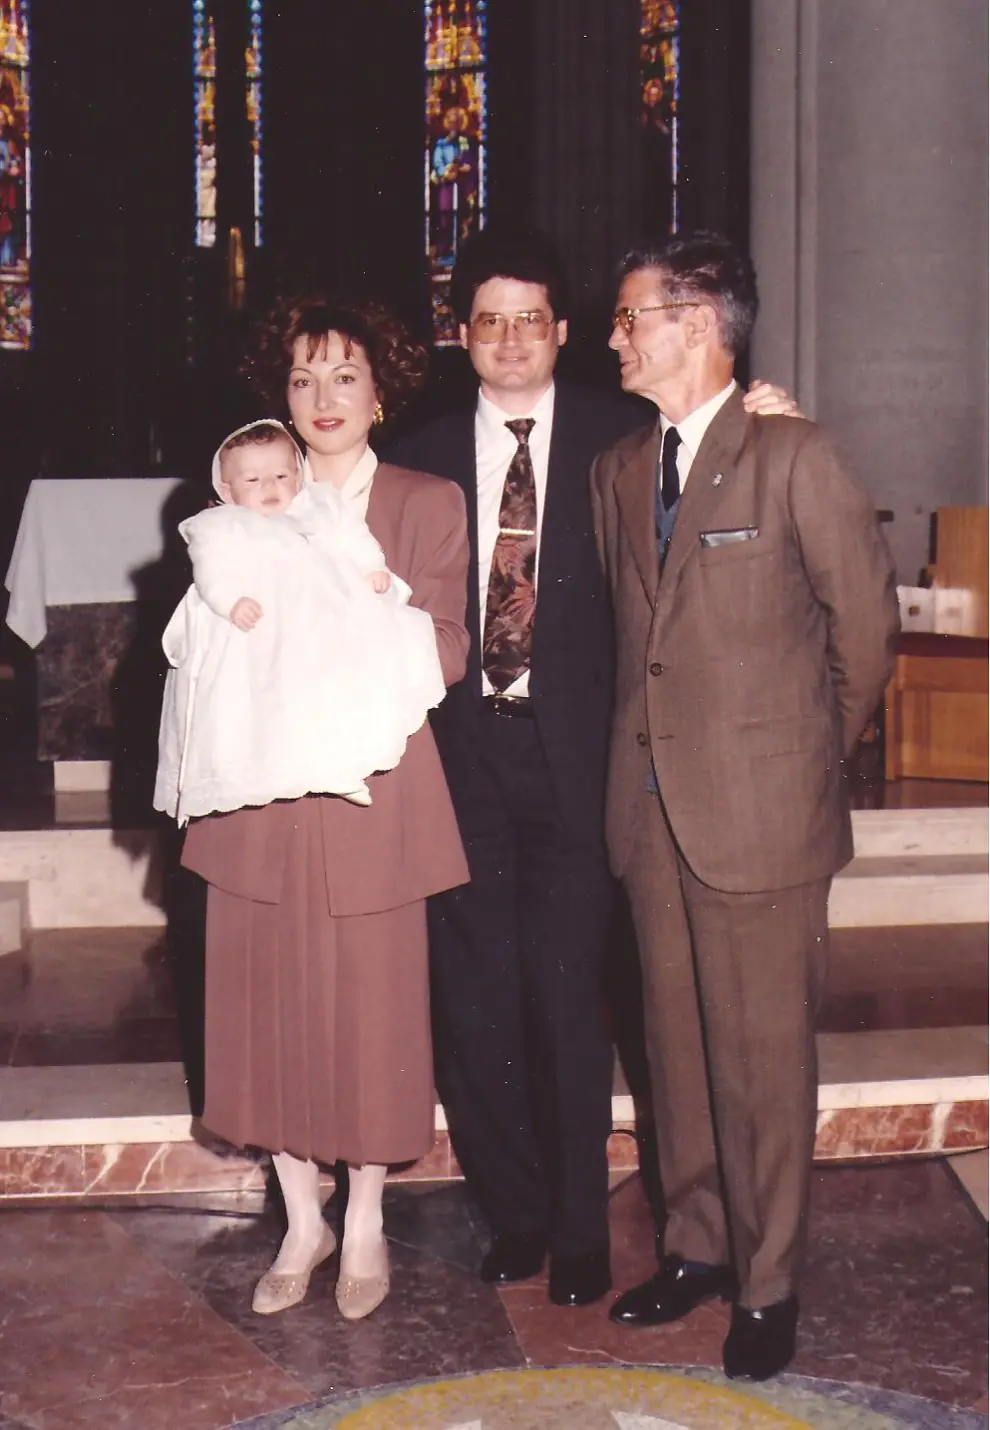 Los orígenes oscenses de Miss Mundo, Mireia Lalaguna. Foto del bautizo de Mireia con sus padres, Encarna y José Luis, y su abuelo Benigno